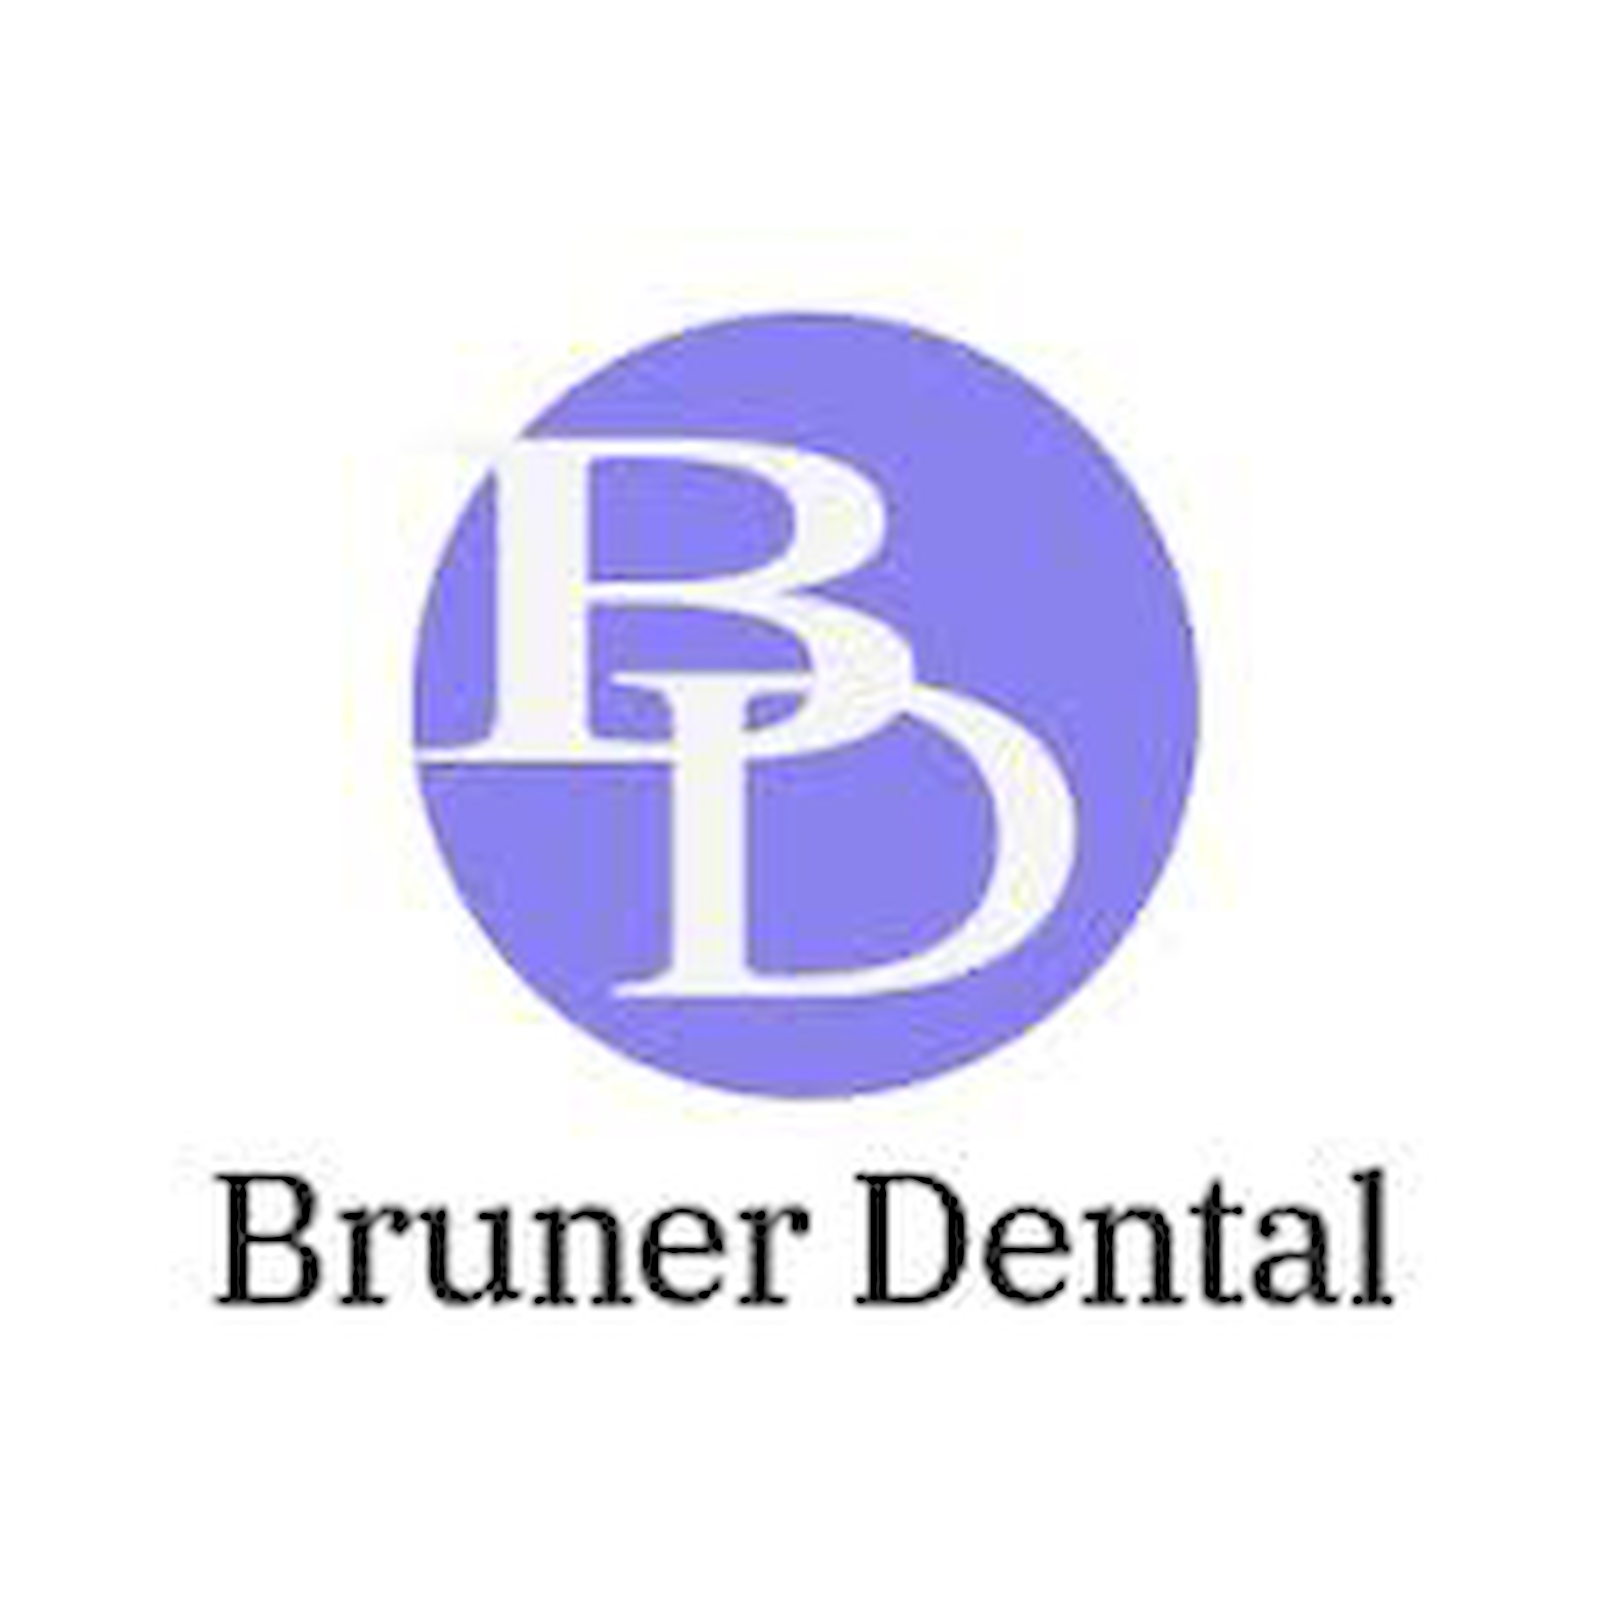 Bruner Dental